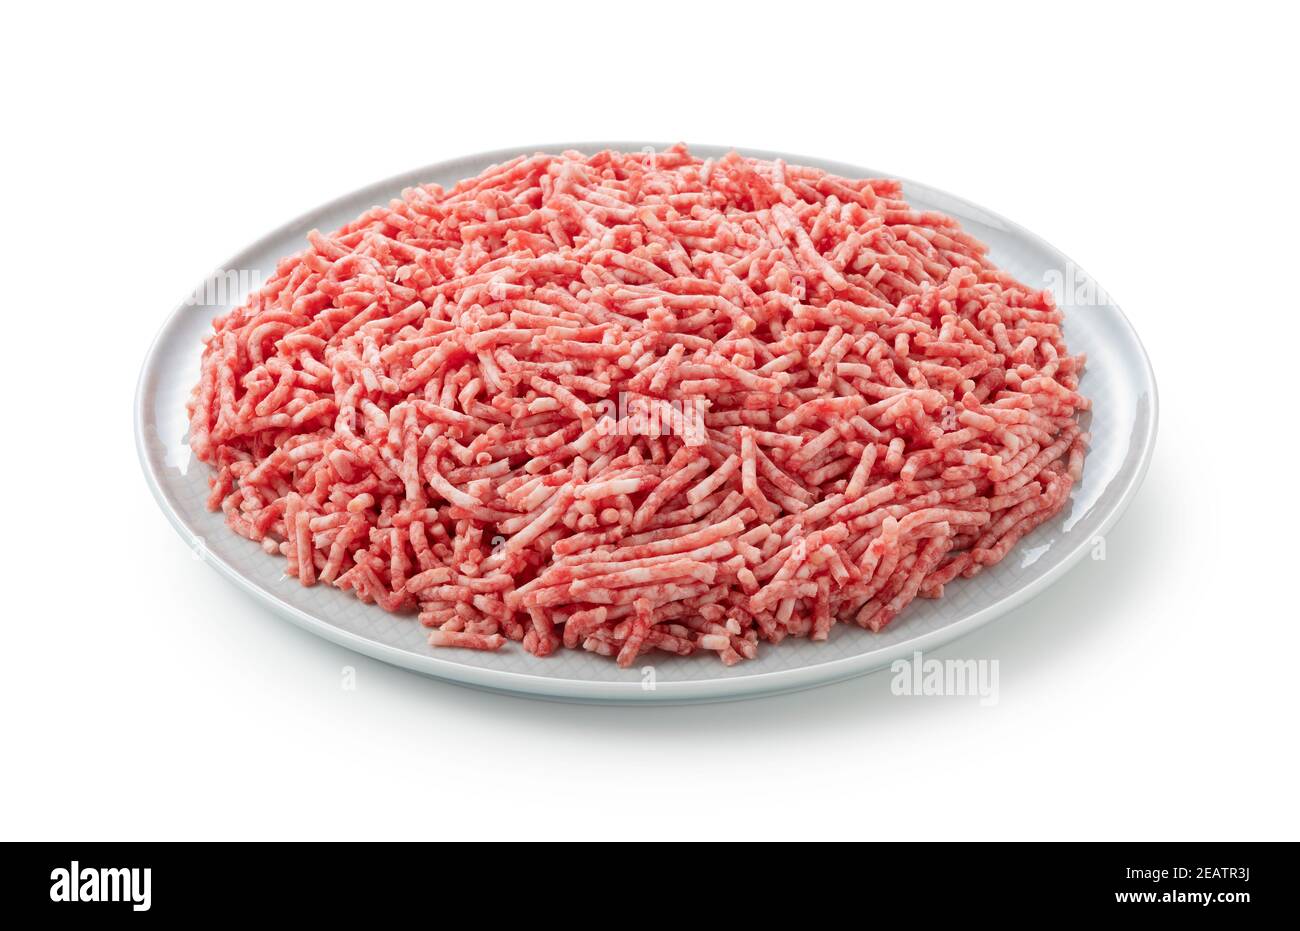 Carne picada servida en un plato sobre fondo blanco Foto de stock